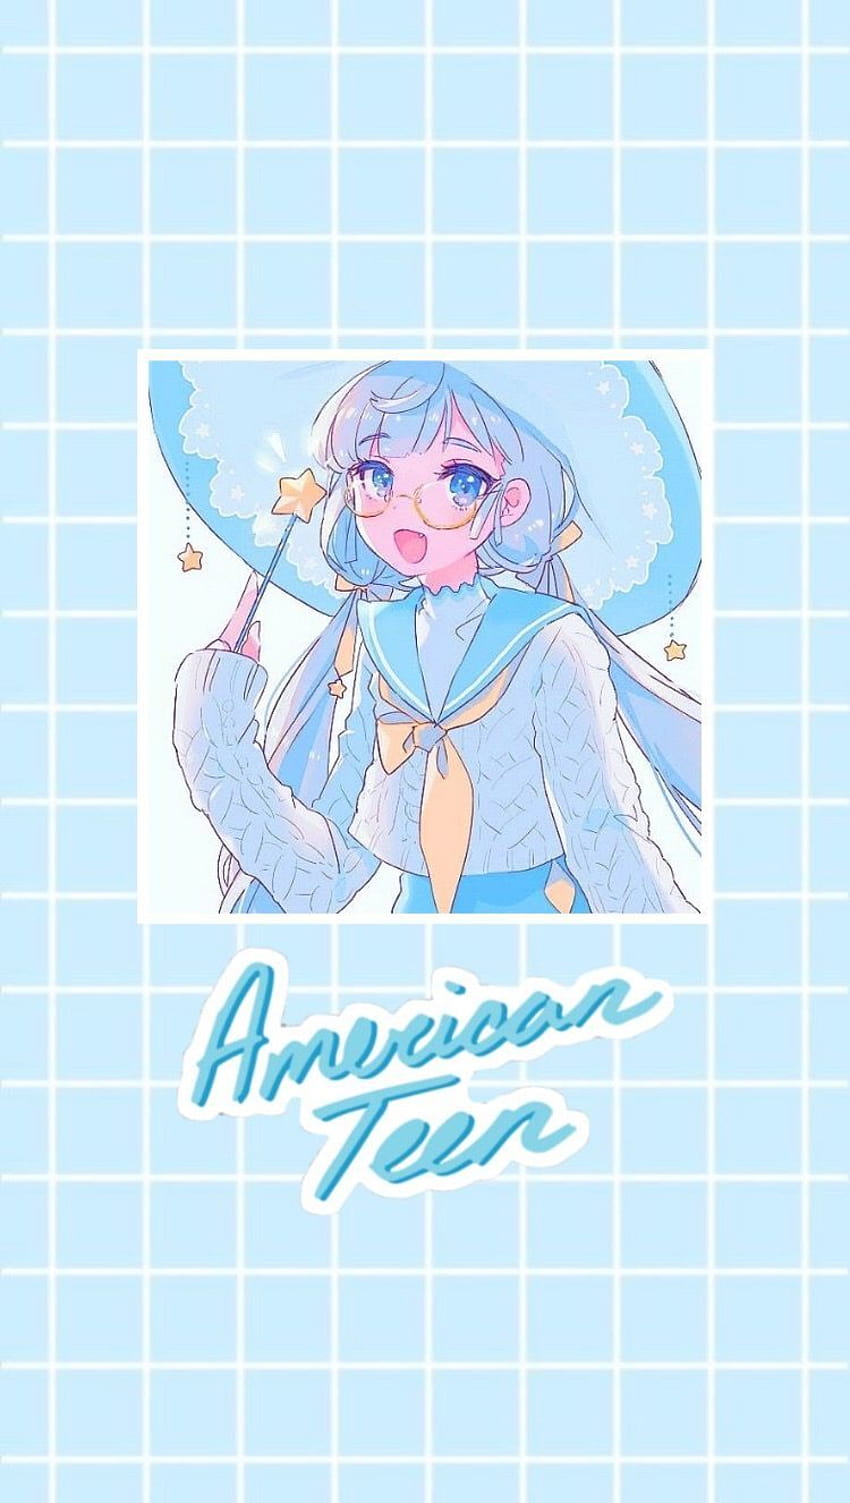 Anime aesthetic, light blue anime HD phone wallpaper